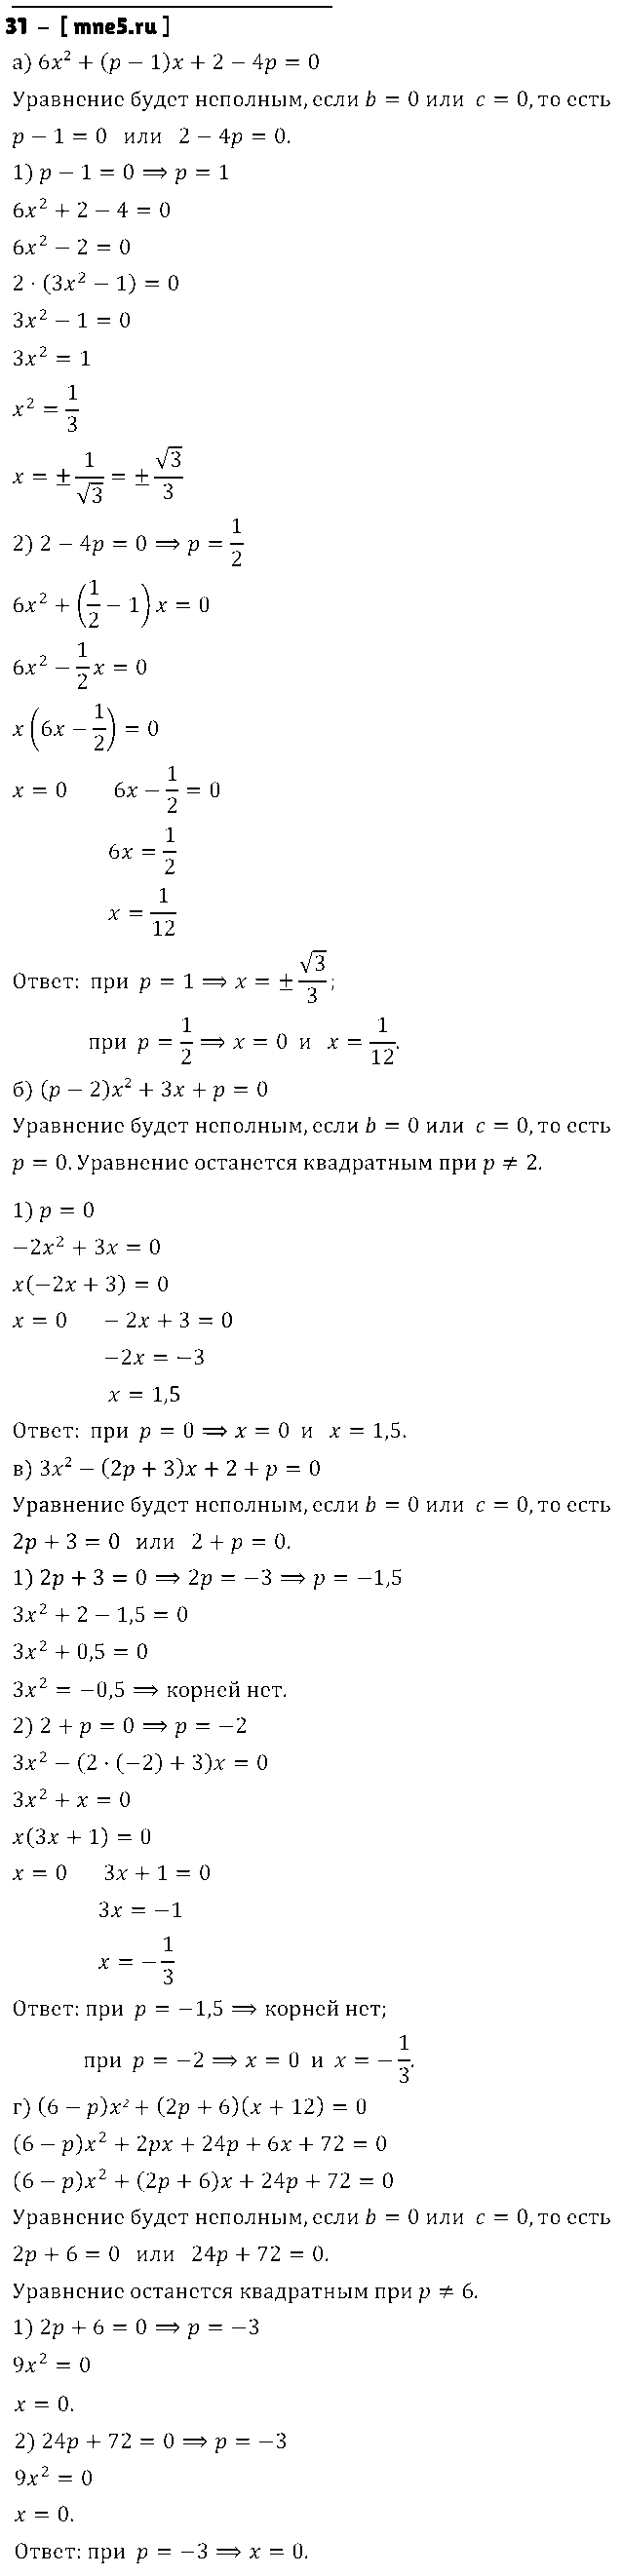 ГДЗ Алгебра 8 класс - 31